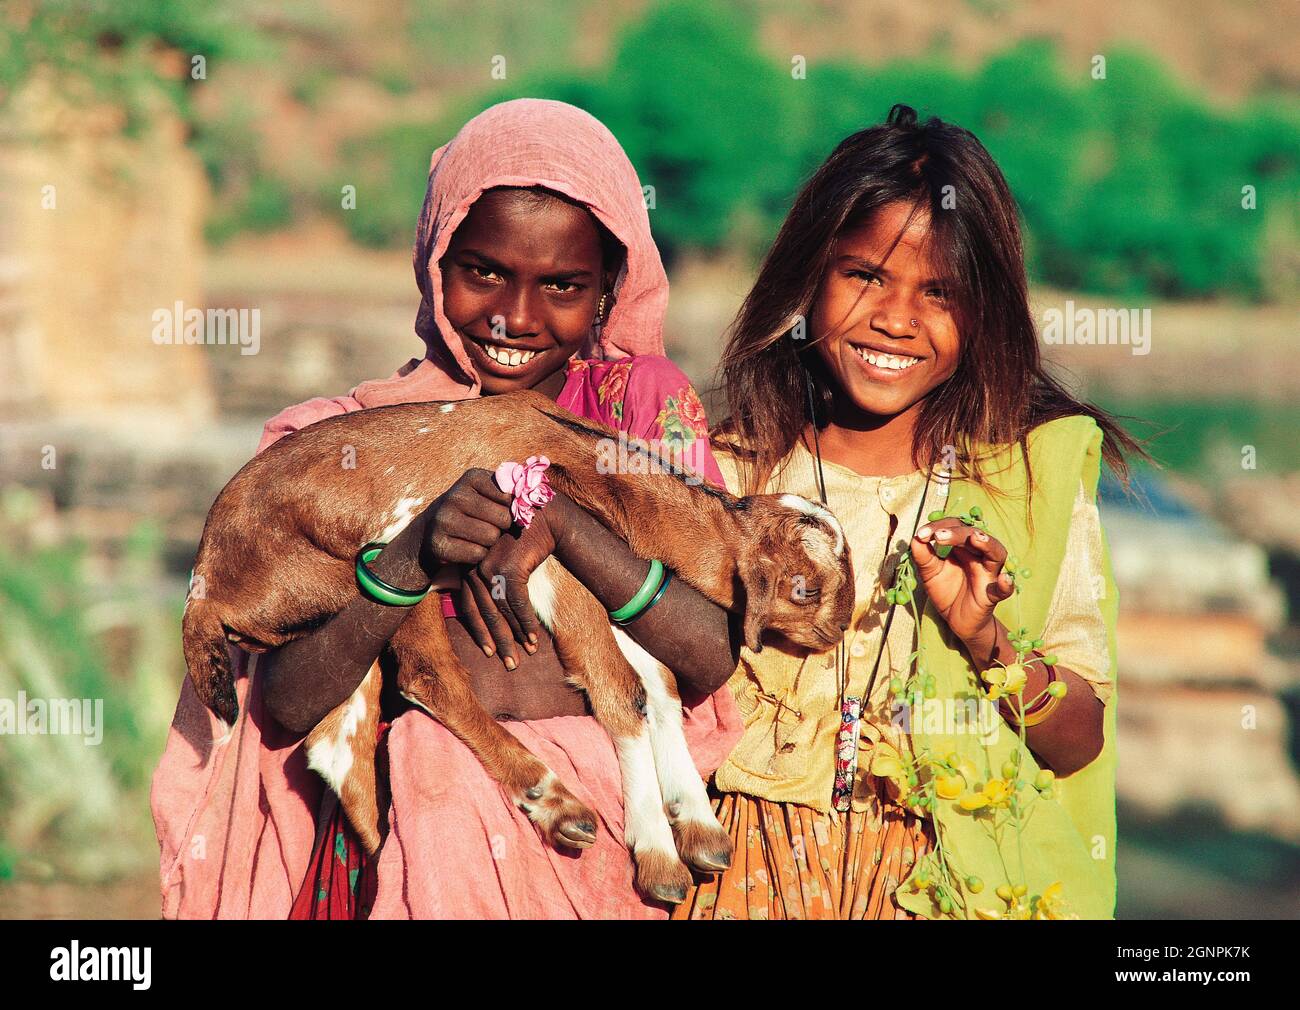 Inde. Rajasthan. Udaipur. Nathawara. Les enfants de la zone rurale. Deux filles avec une chèvre. Banque D'Images